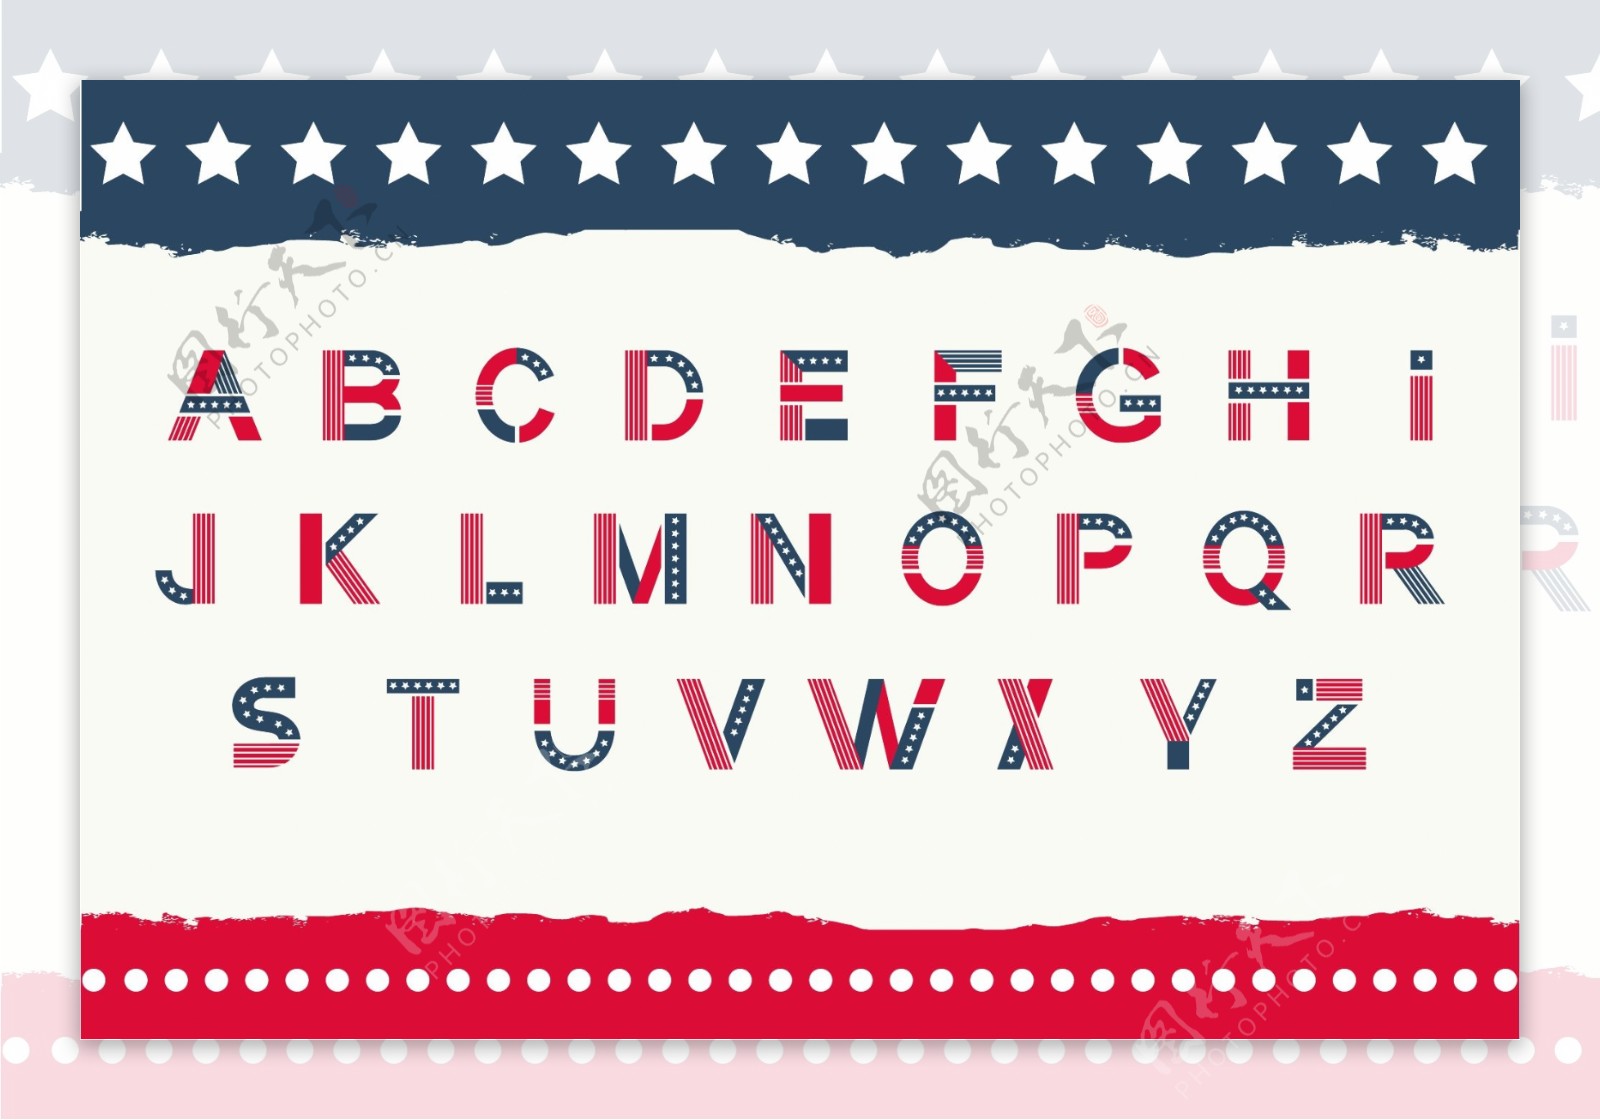 美国星条旗英文字体设计